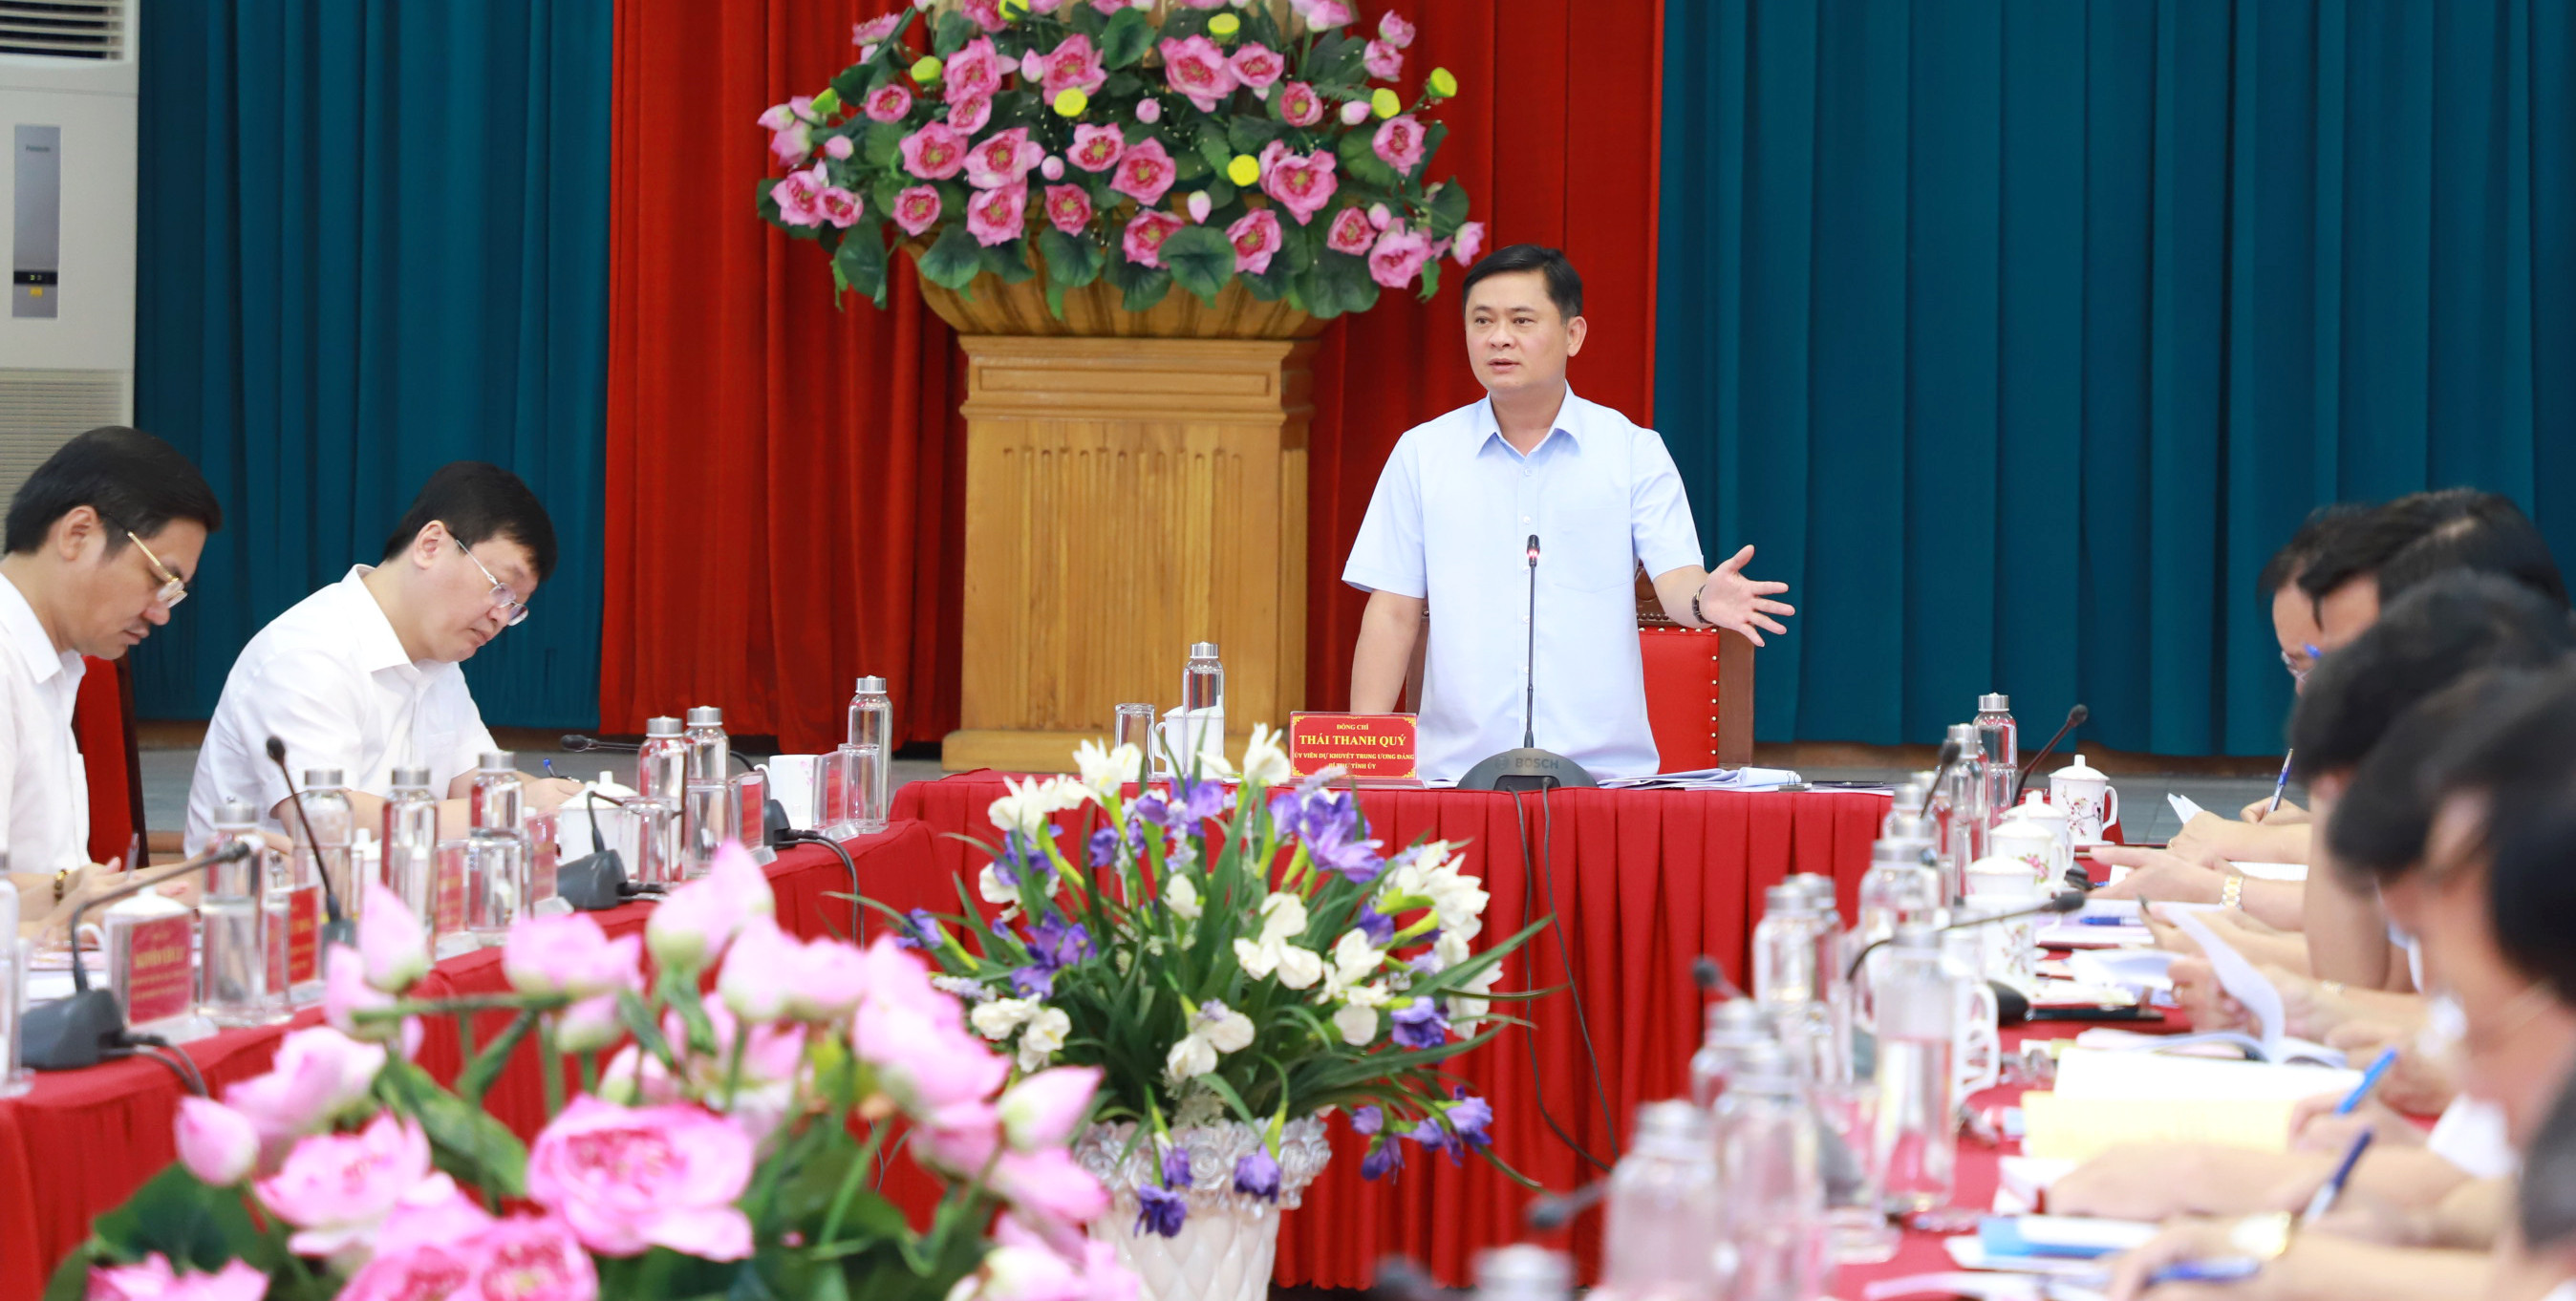 Đồng chí Thái Thanh Quý - Ủy viên dự khuyết Trung ương Đảng, Bí thư Tỉnh ủy kết luận nội dung về công tác chuẩn bị văn kiện của Đại hội đại biểu Đảng bộ TP Vinh, nhiệm kỳ 2020 - 2025. Ảnh: Thành Duy